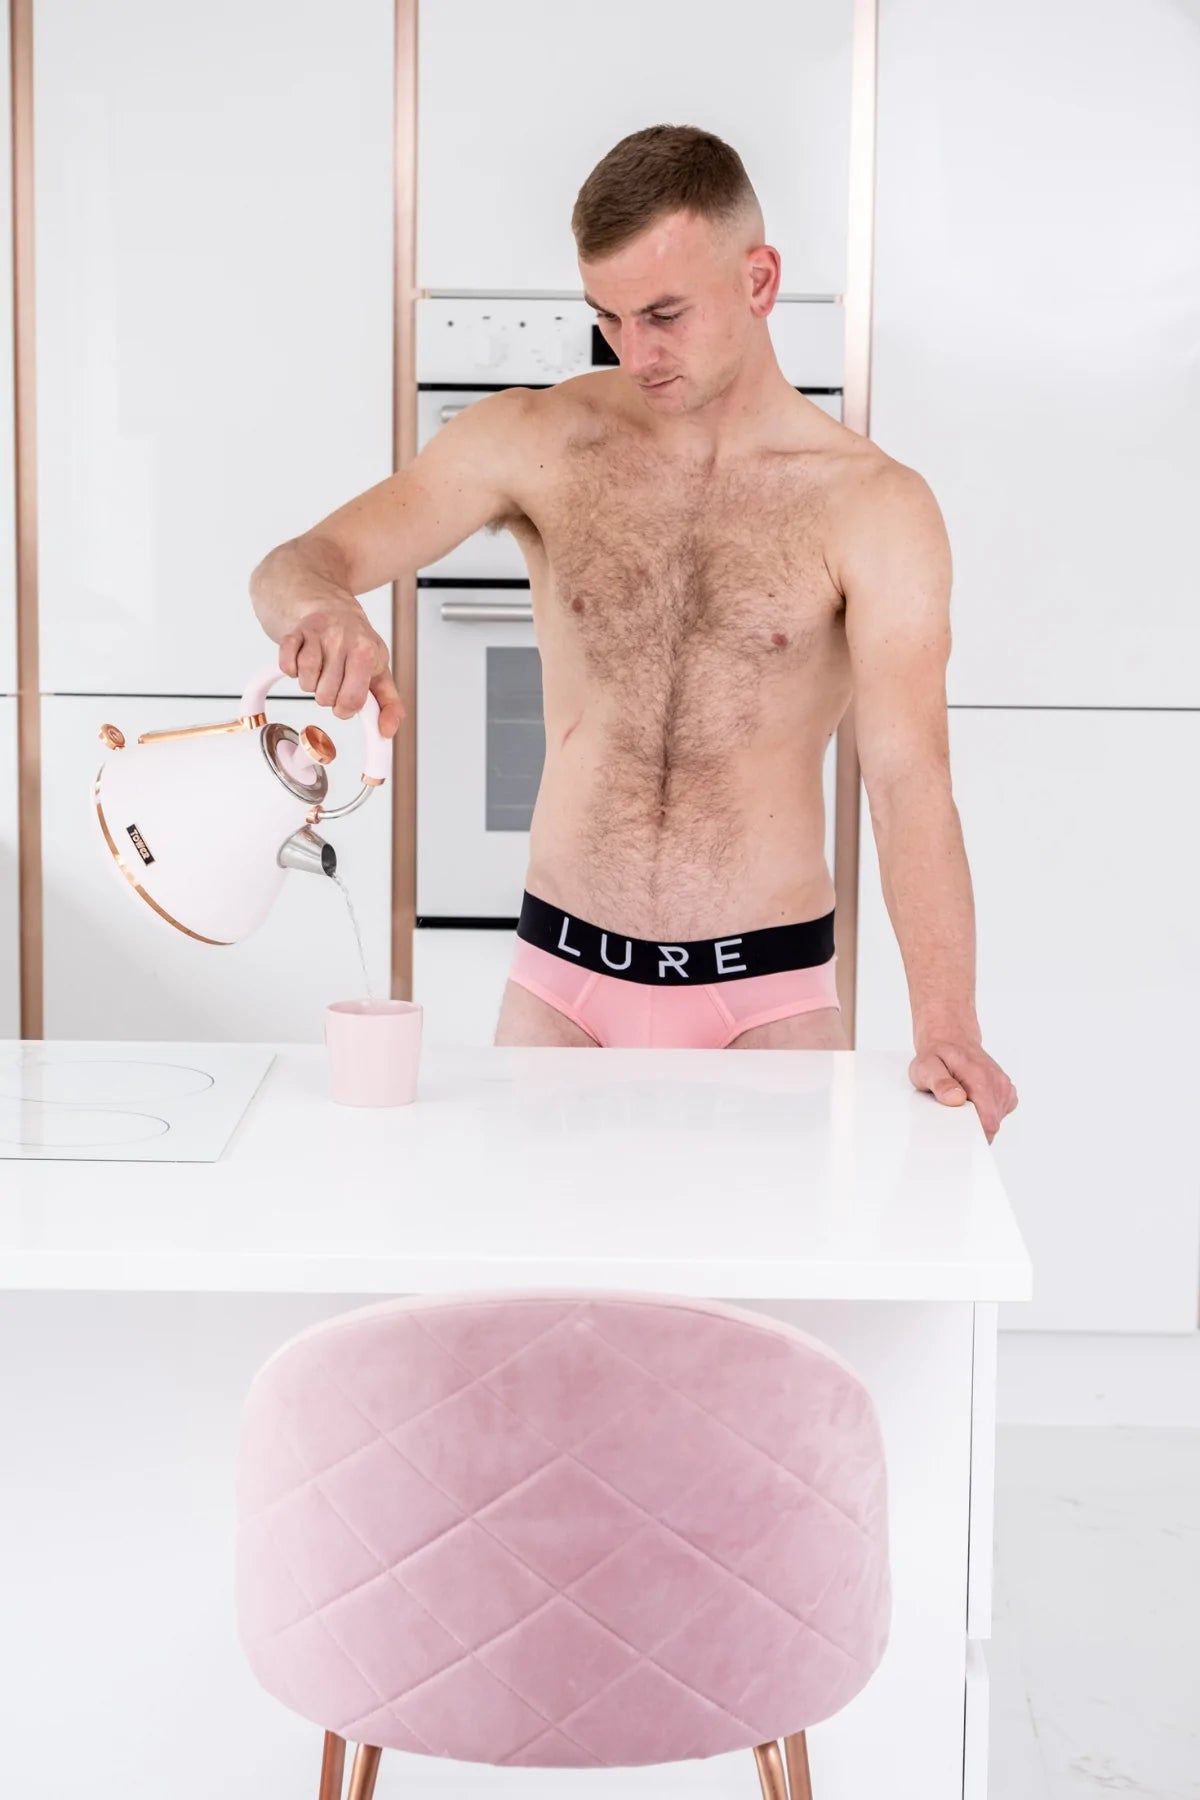 Lure: Bubblegum Pink Brief